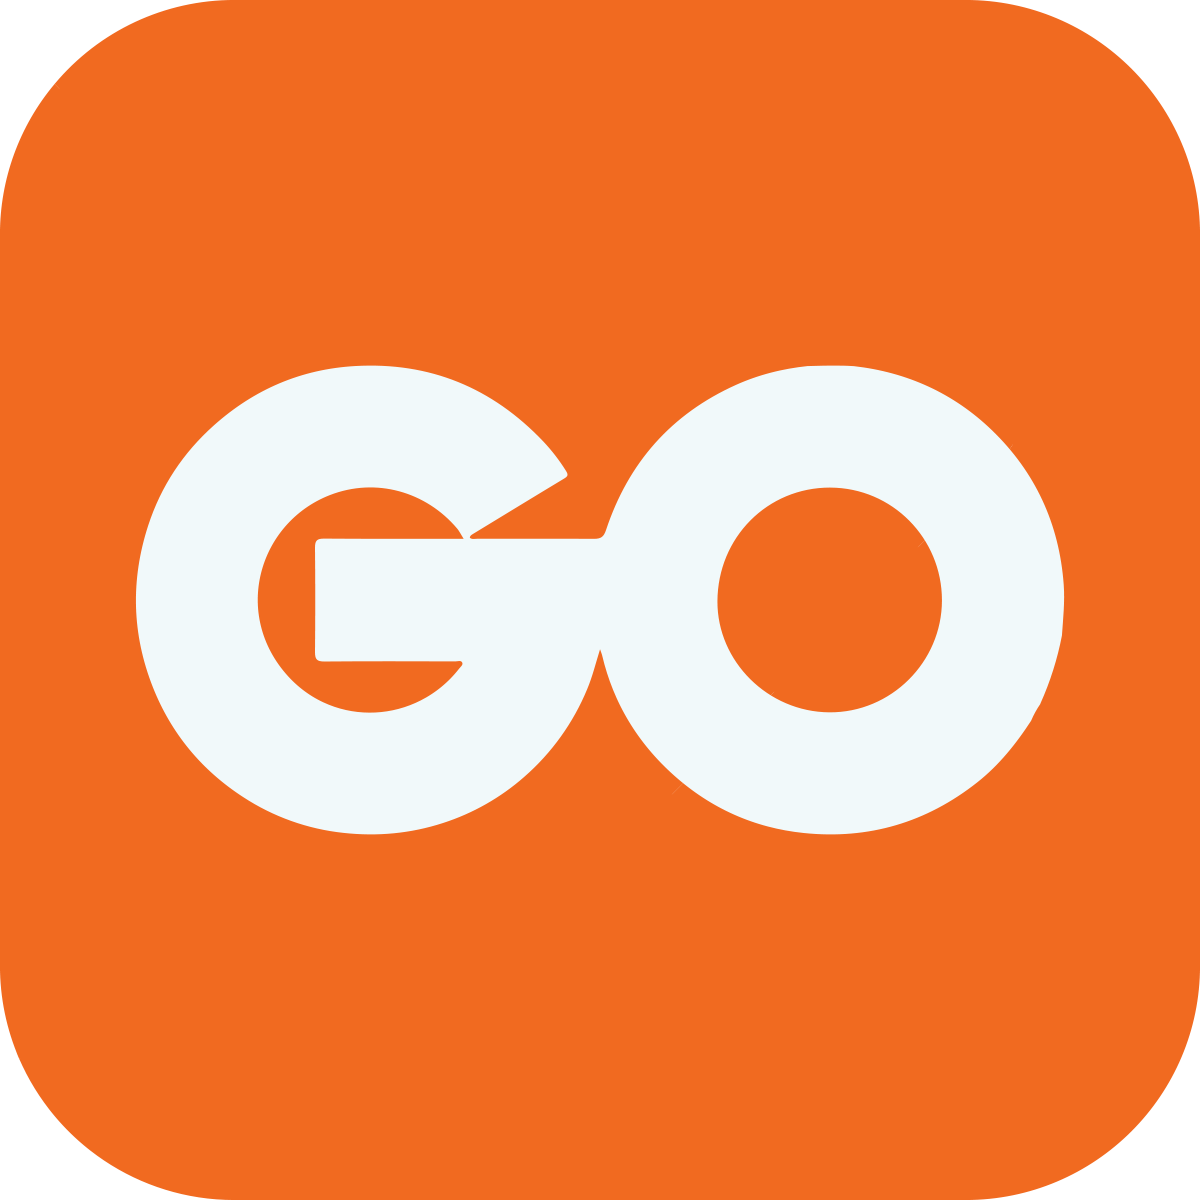 The GO app icon